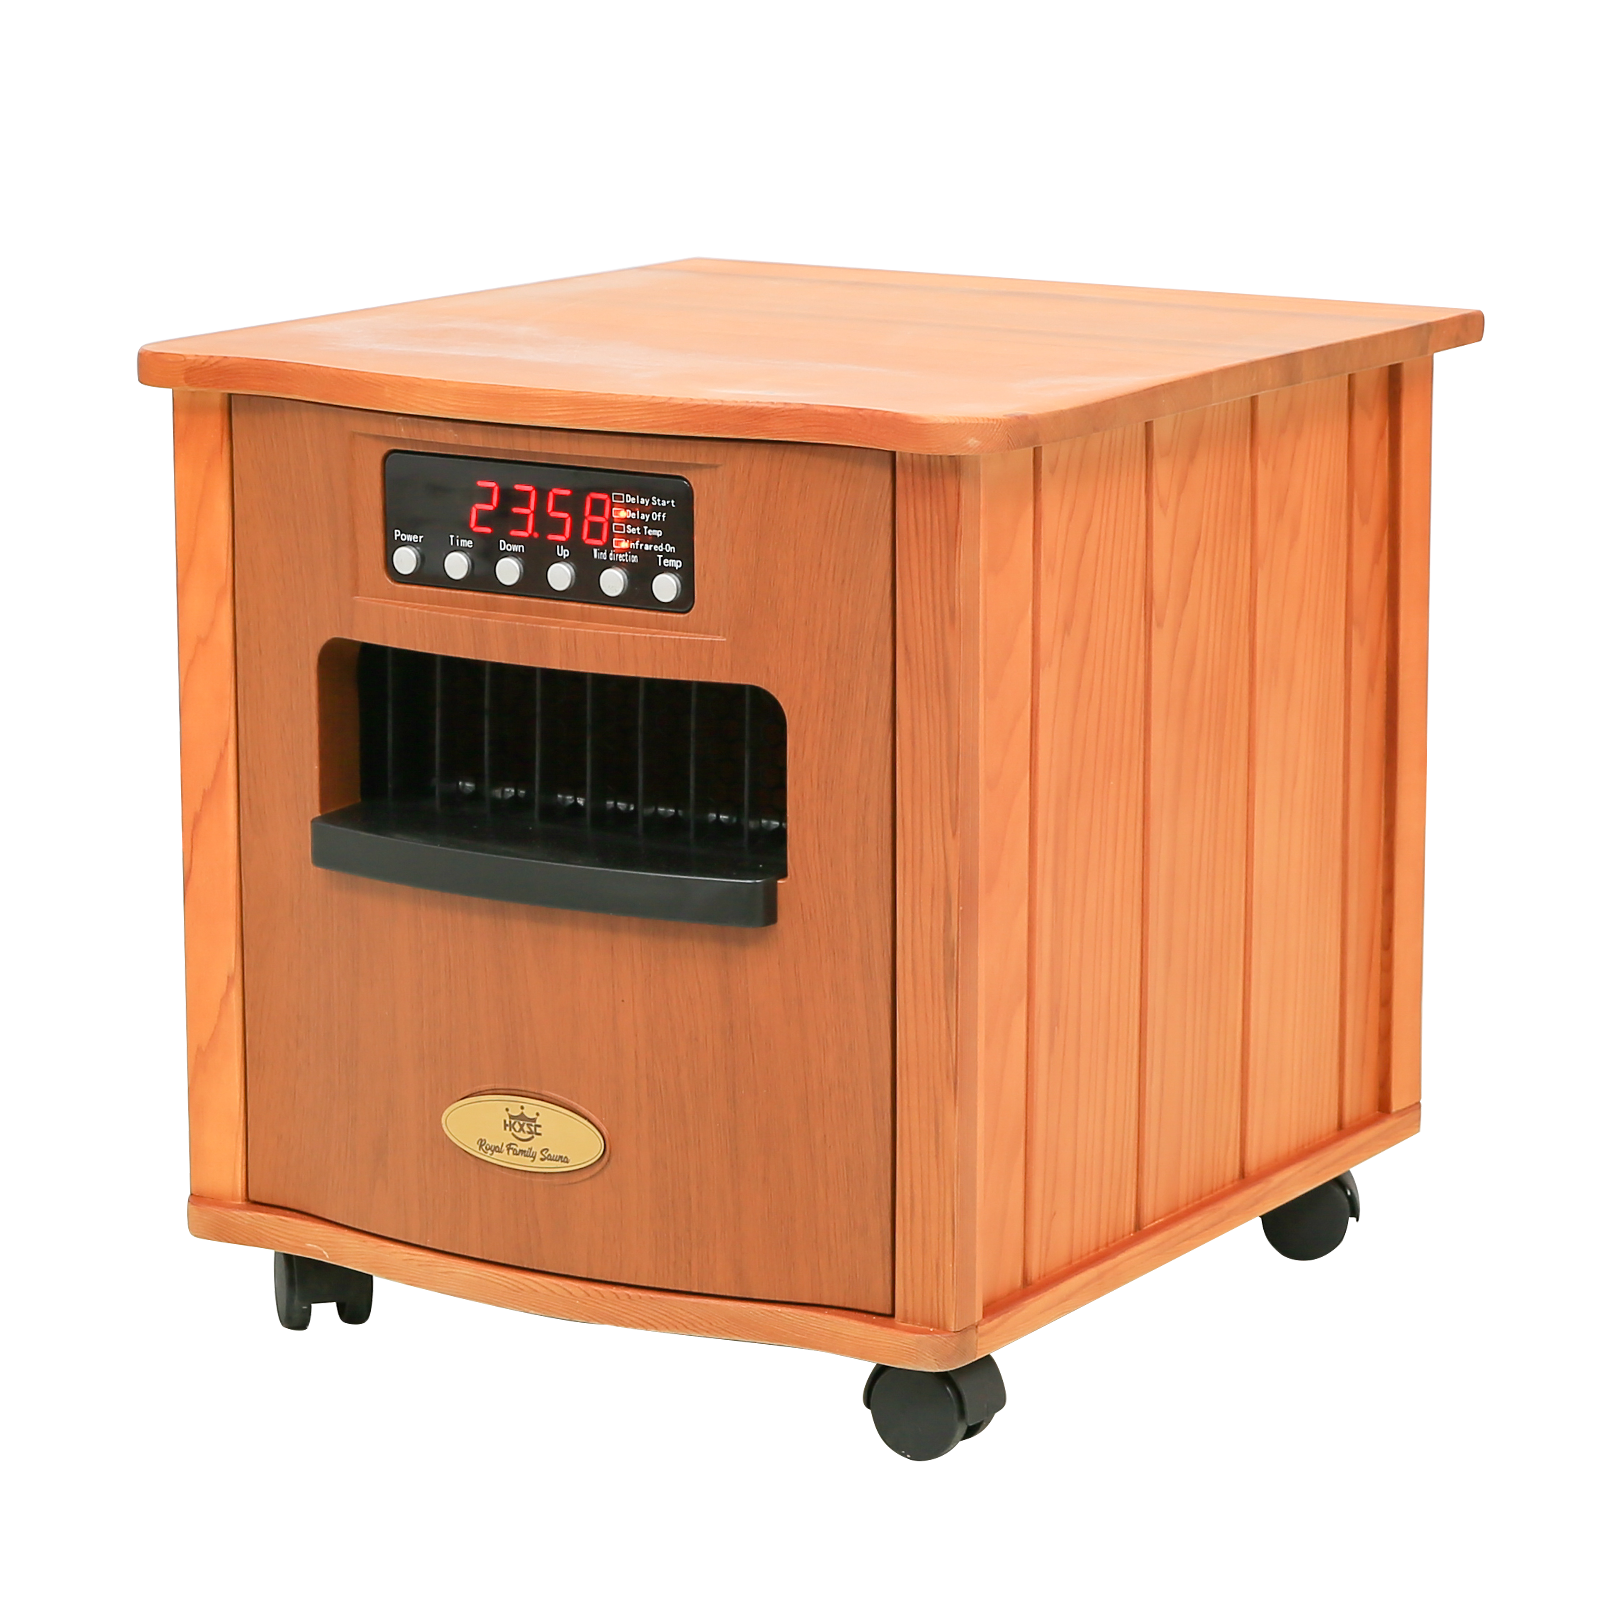 HKXSC 501R Bedside Cupboard Portable Heater In Red Cedar